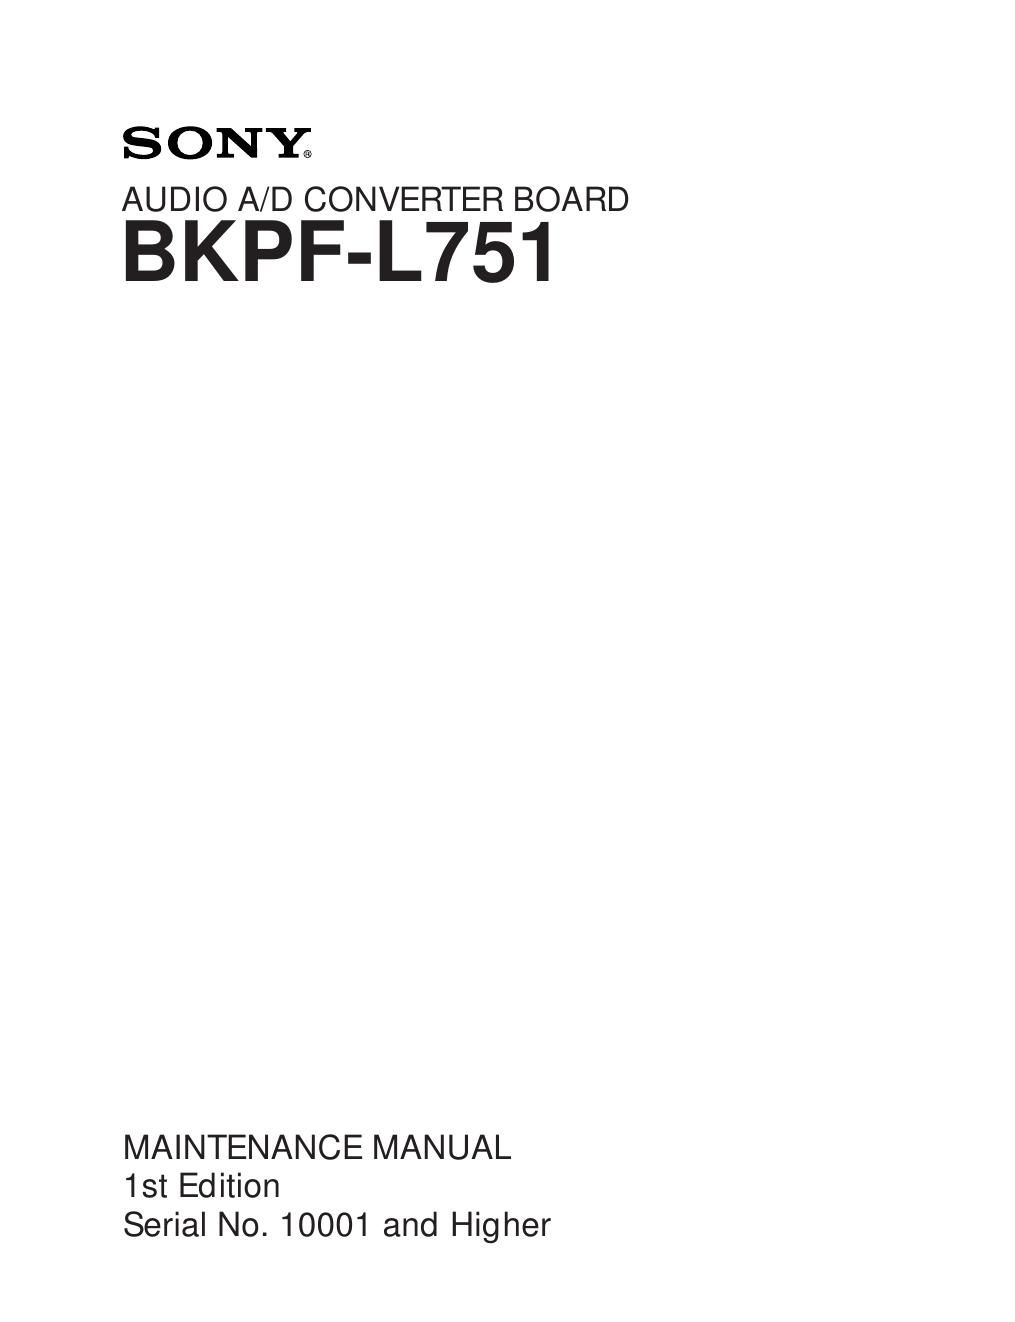 sony bkpfl 751 service manual